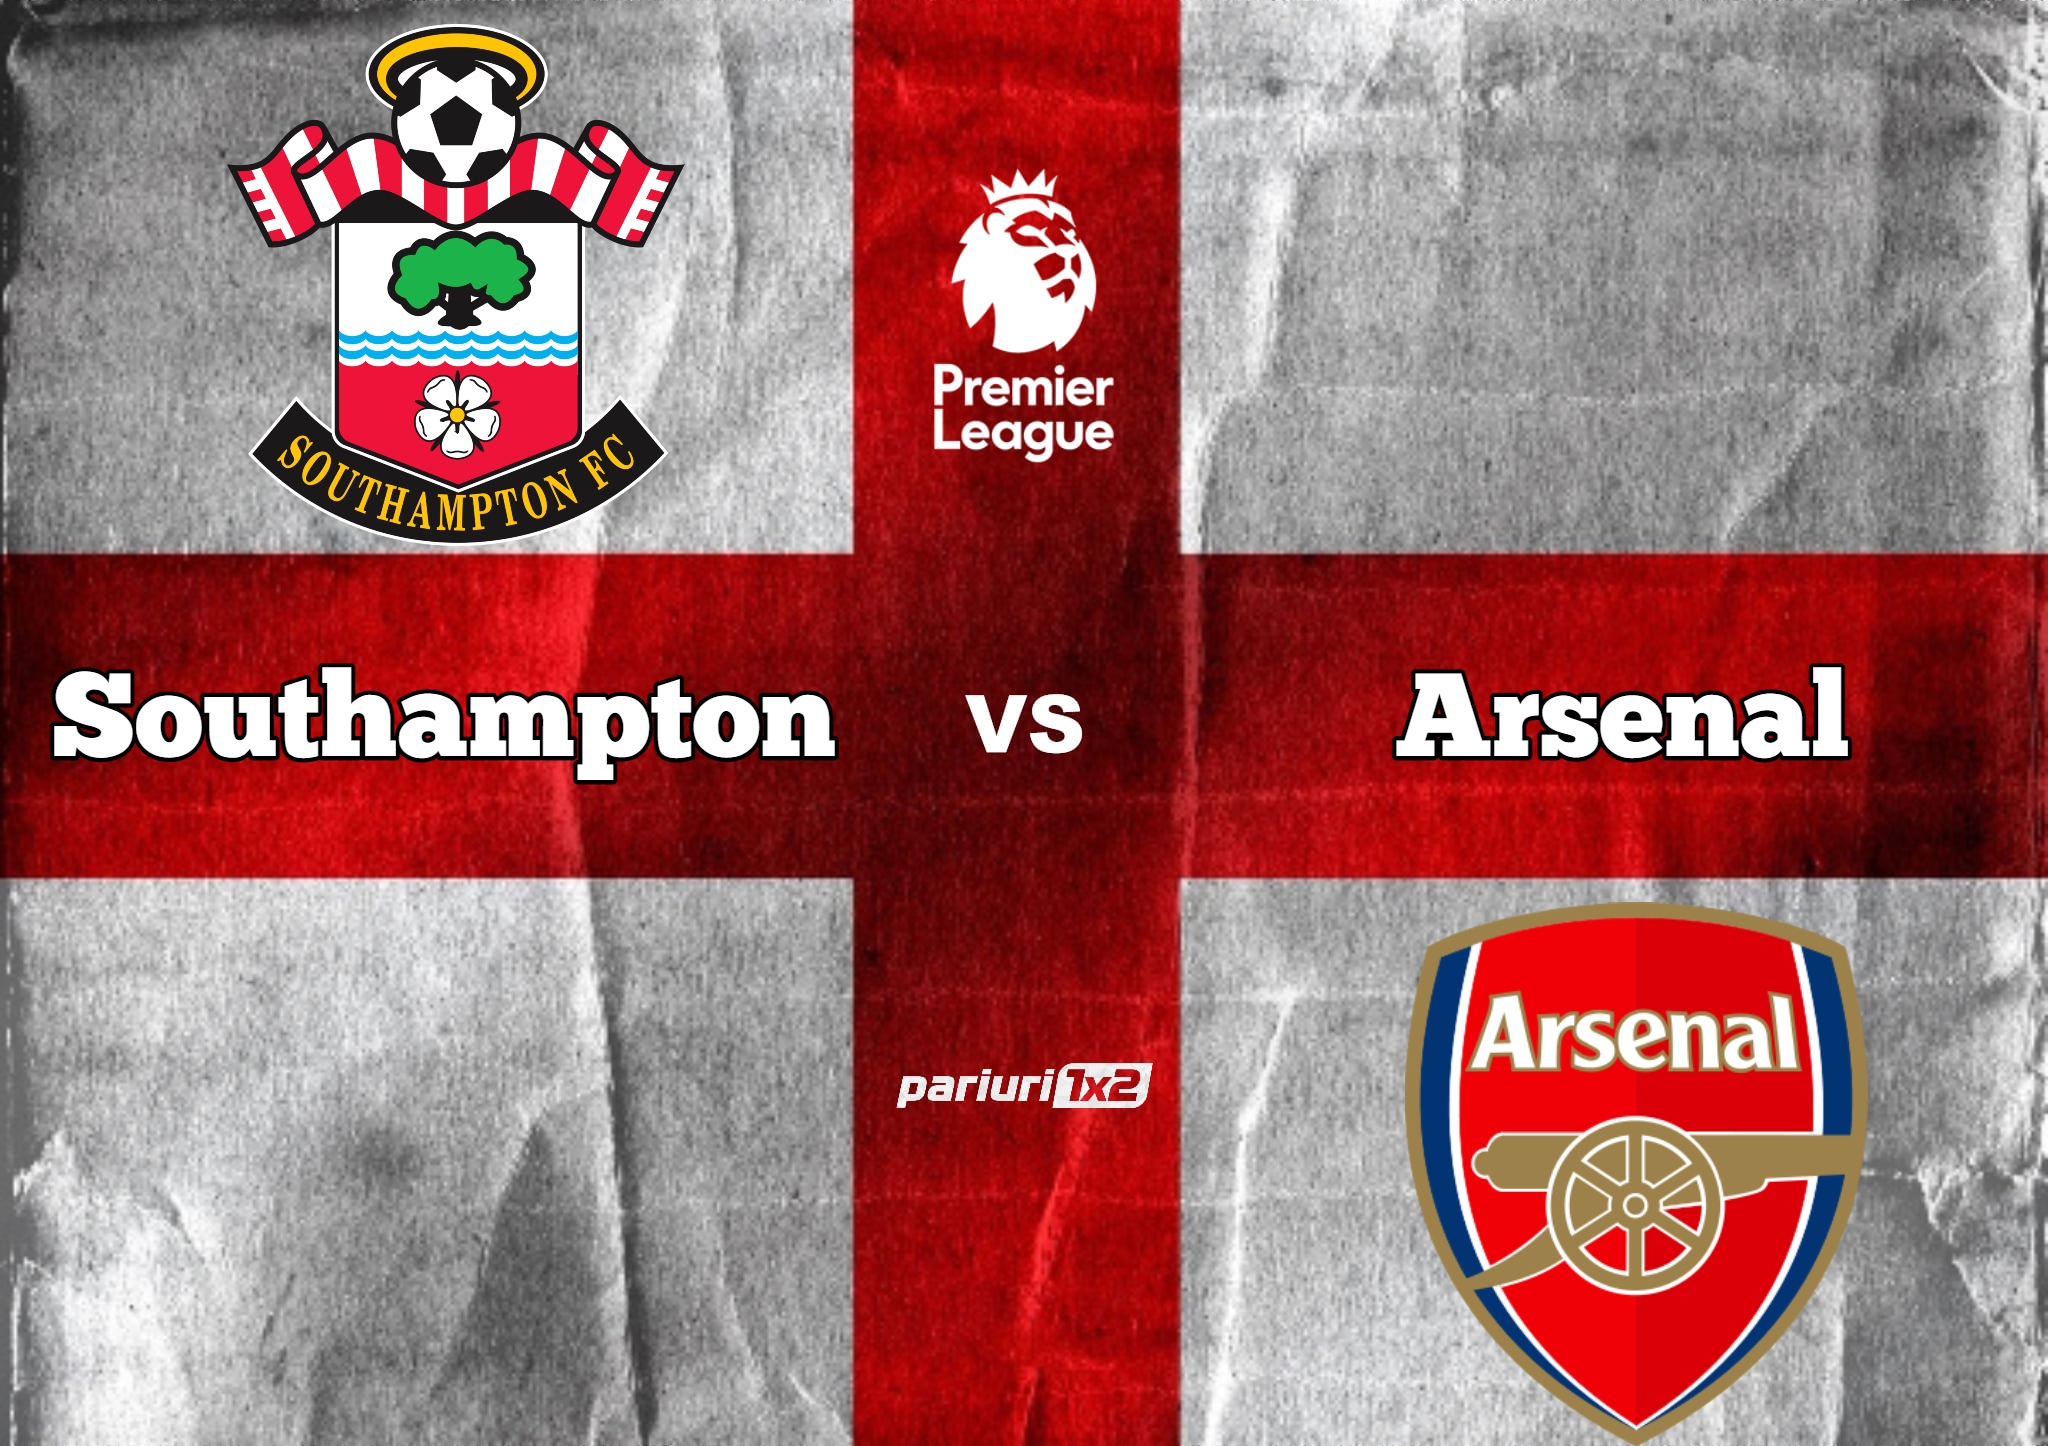 Southampton - Arsenal